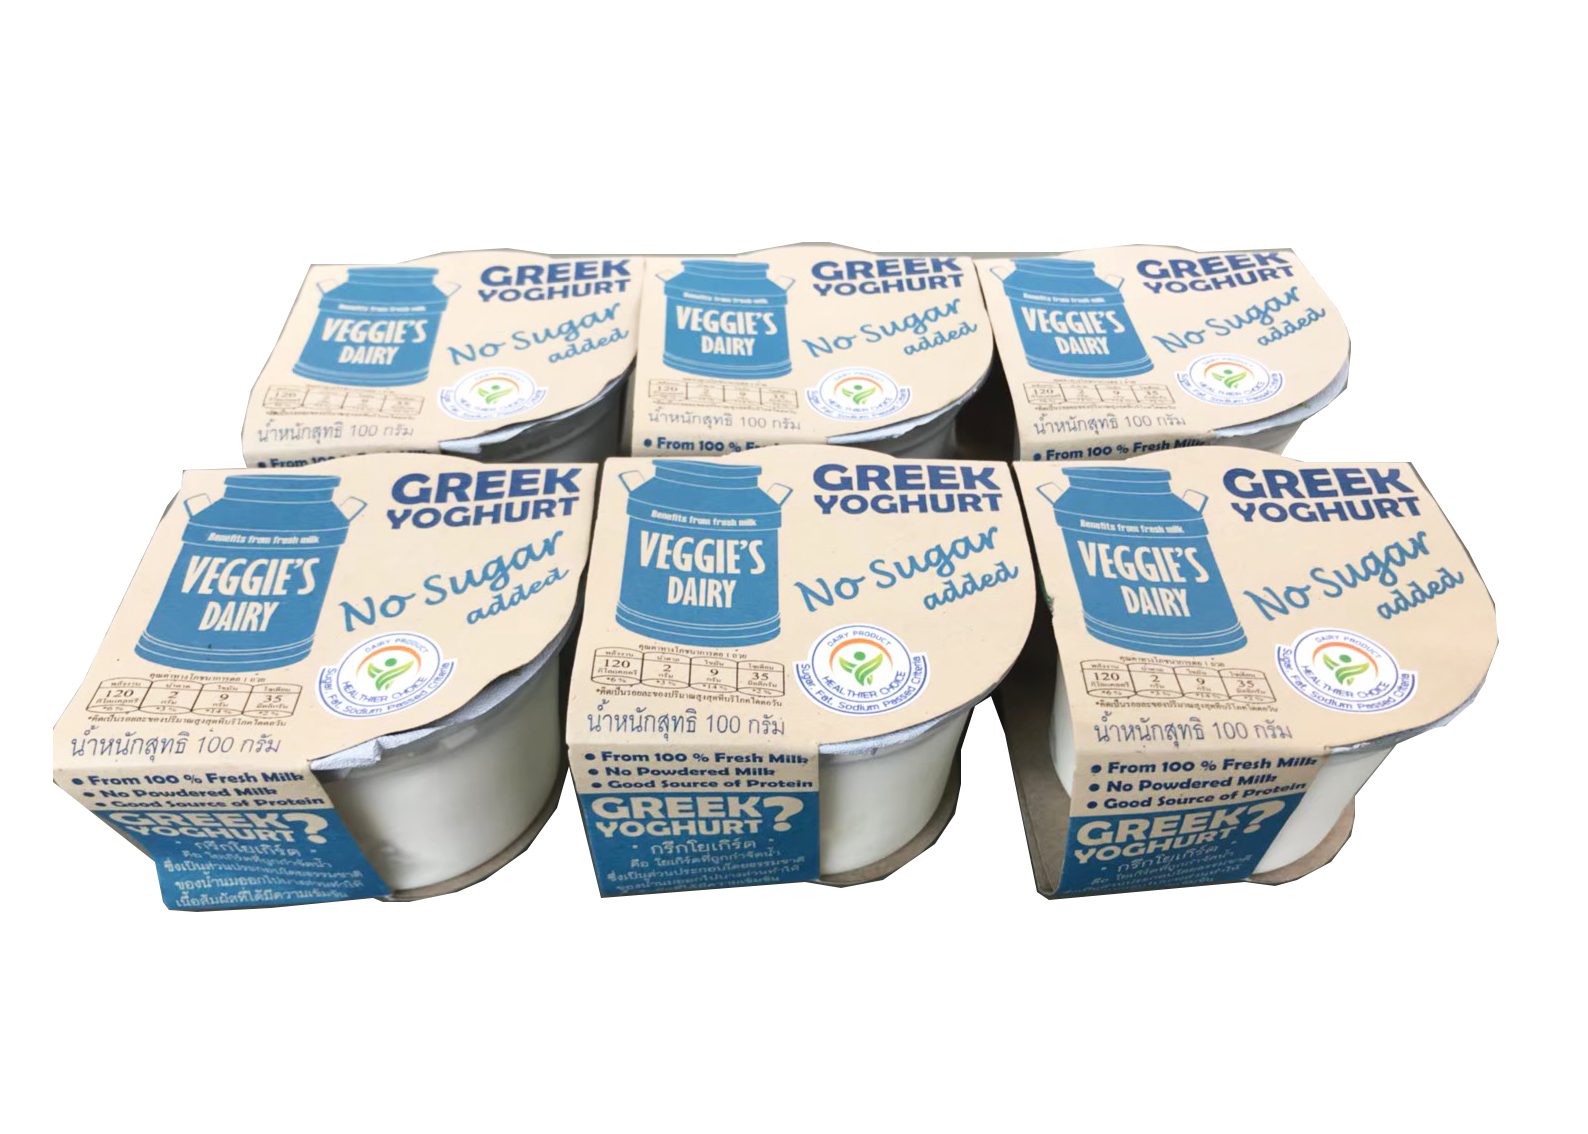 กรีกโยเกิร์ต เวจจี้ส์แดรี่ 100 กรัม แพค 6 ถ้วย สูตรไม่มีน้ำตาล Veggie’s Dairy Greek Yoghurt 100 g 6 Cups No sugar added